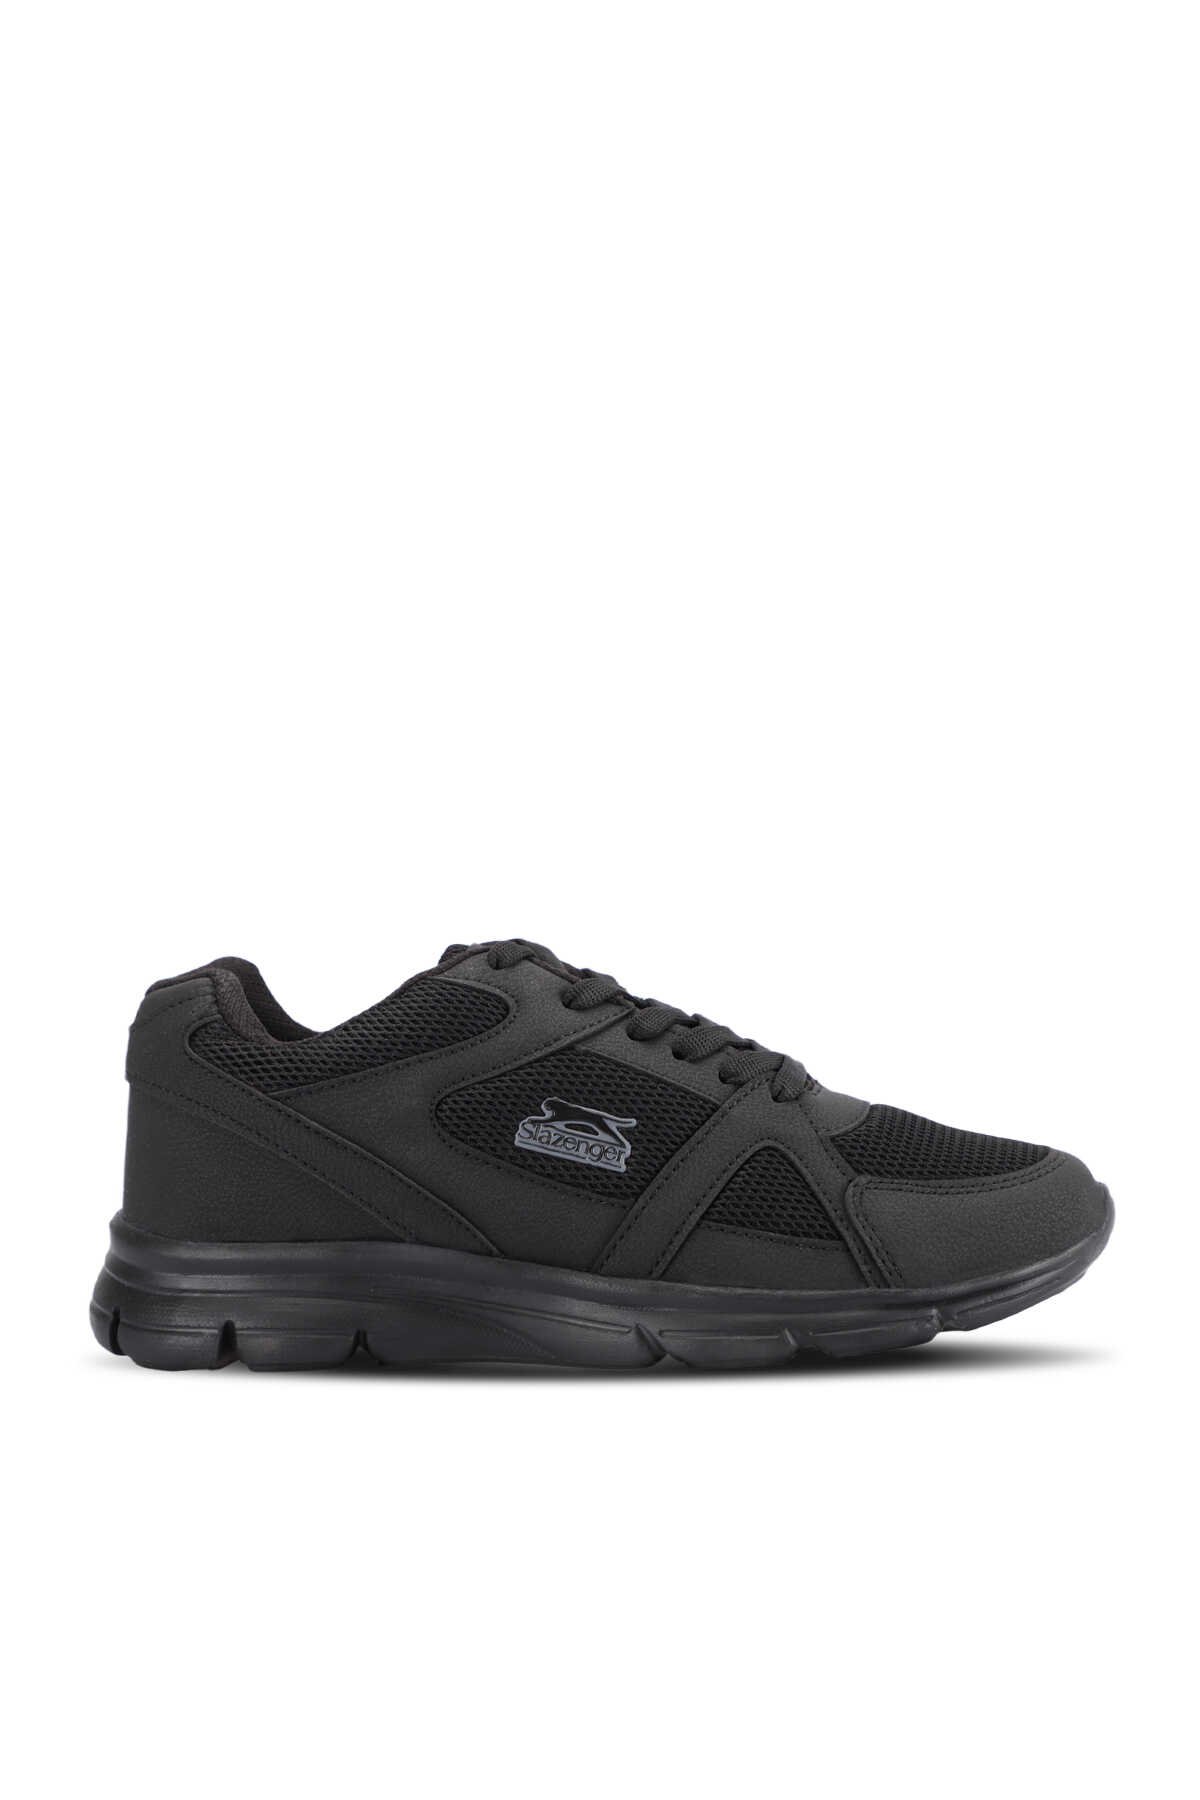 Slazenger - PERA Sneaker Kadın Ayakkabı Siyah / Siyah